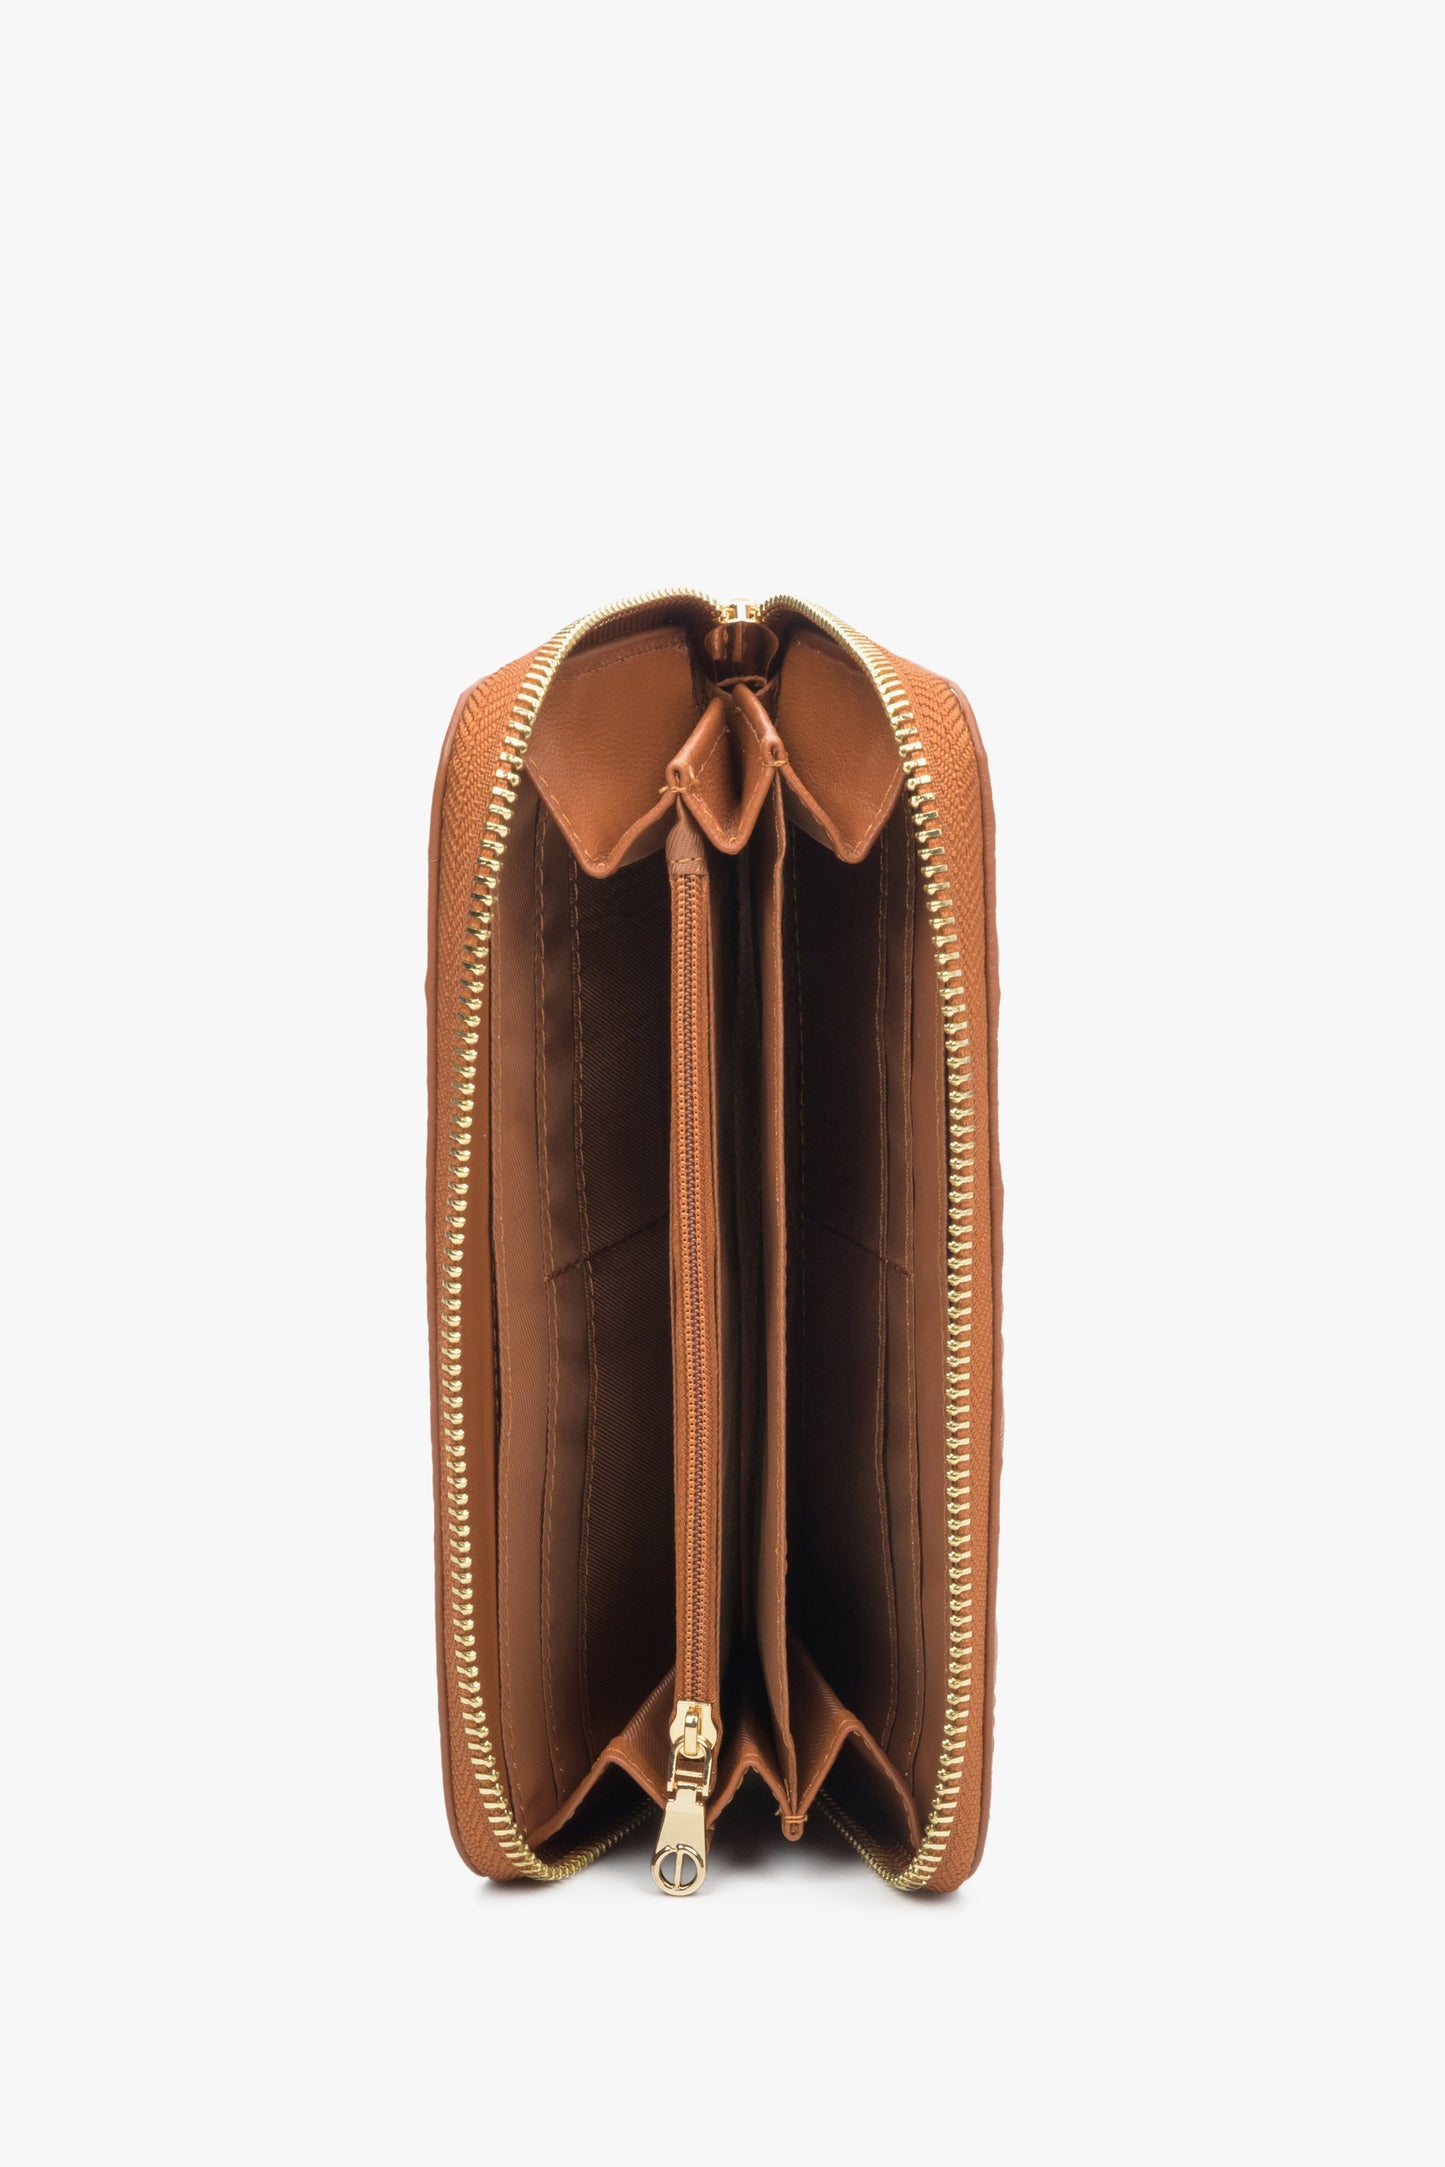 Damski duży portfel w kolorze brązowym marki Estro z suwakiem - wnętrze.